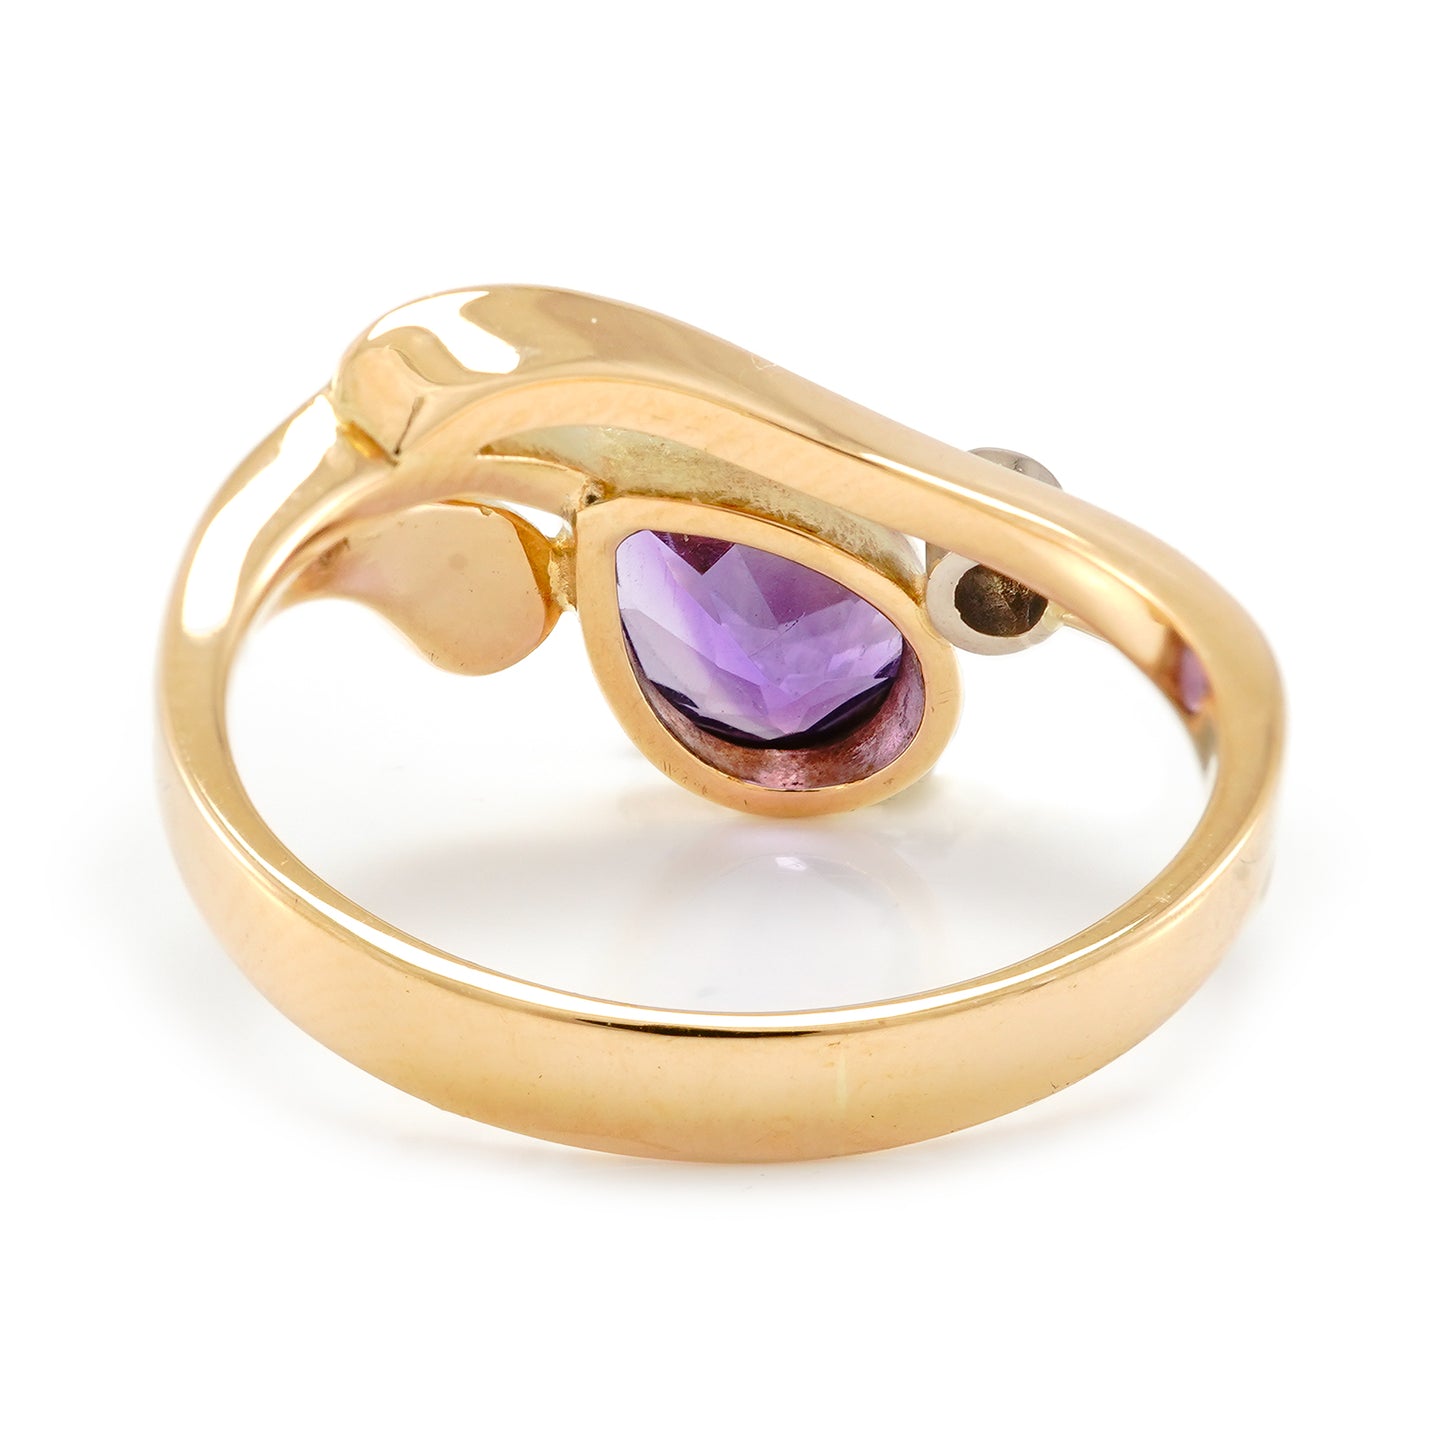 Edelsteinring Goldring mit Amethyst Diamanten 585 Gold Damenschmuck gemstone ring